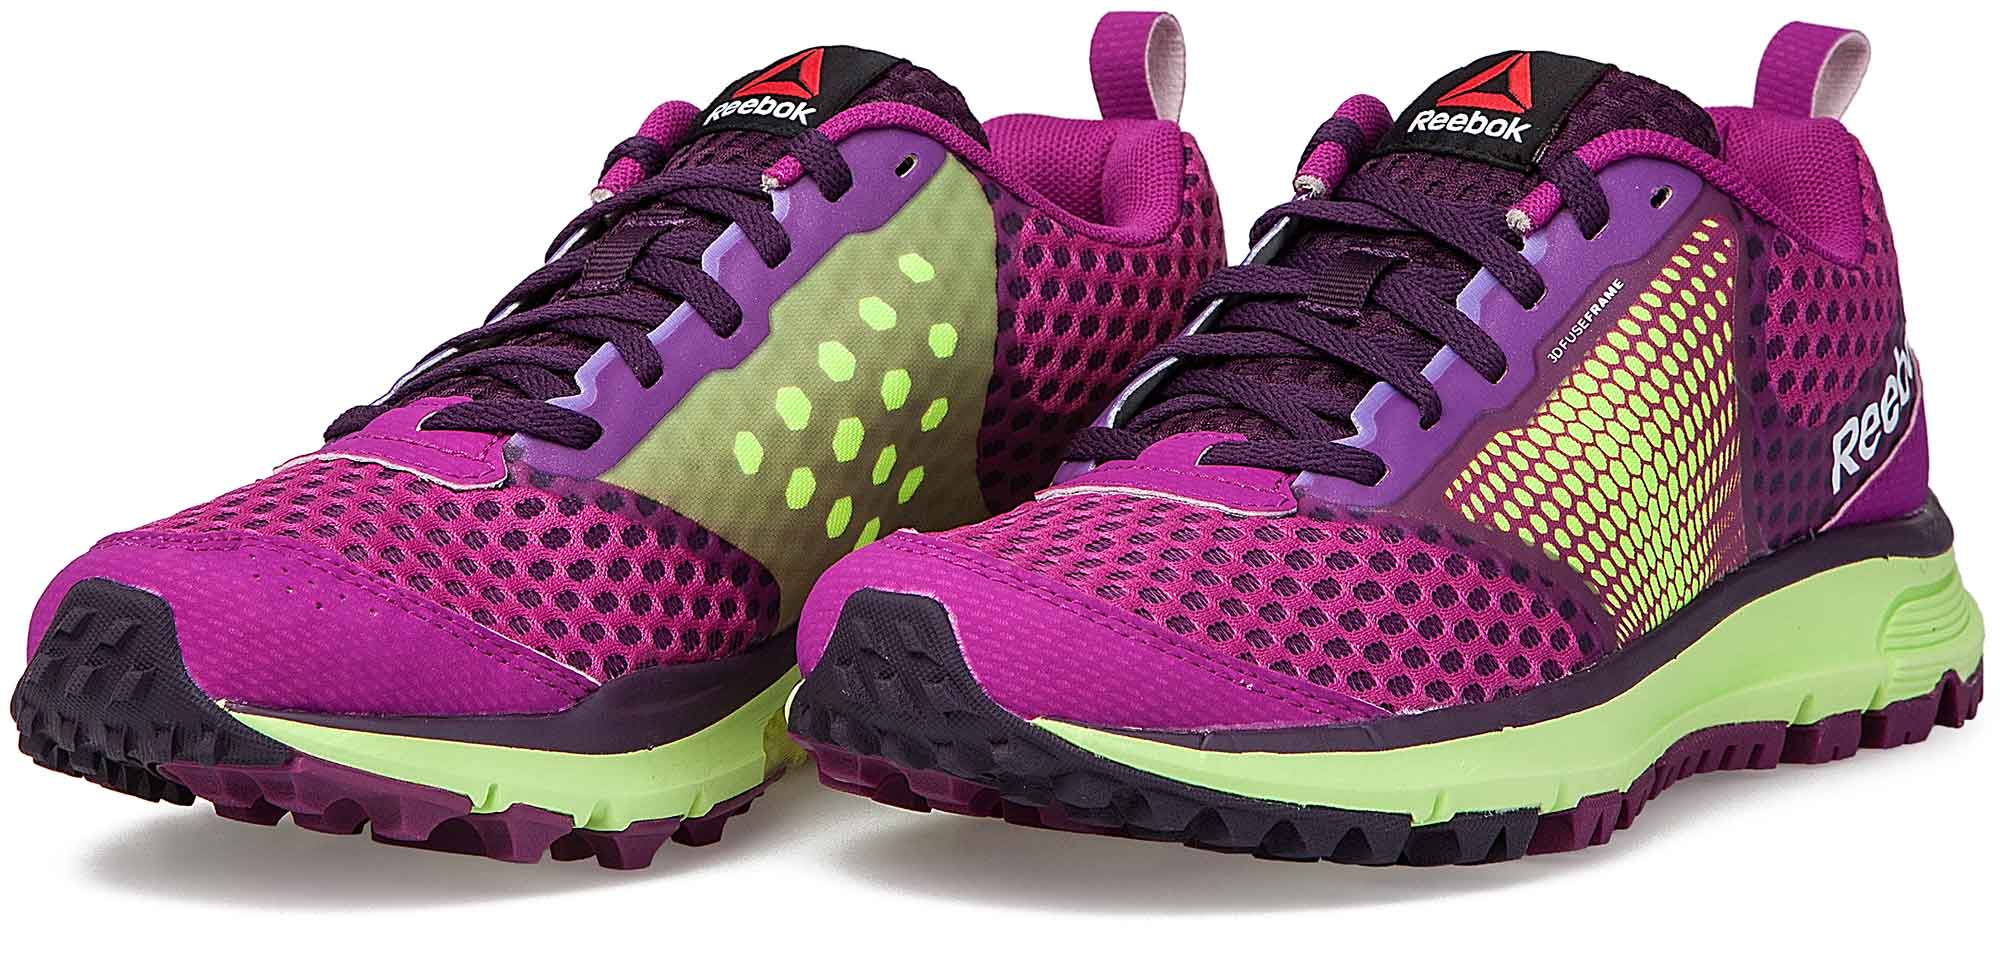 Women's jogging shoes